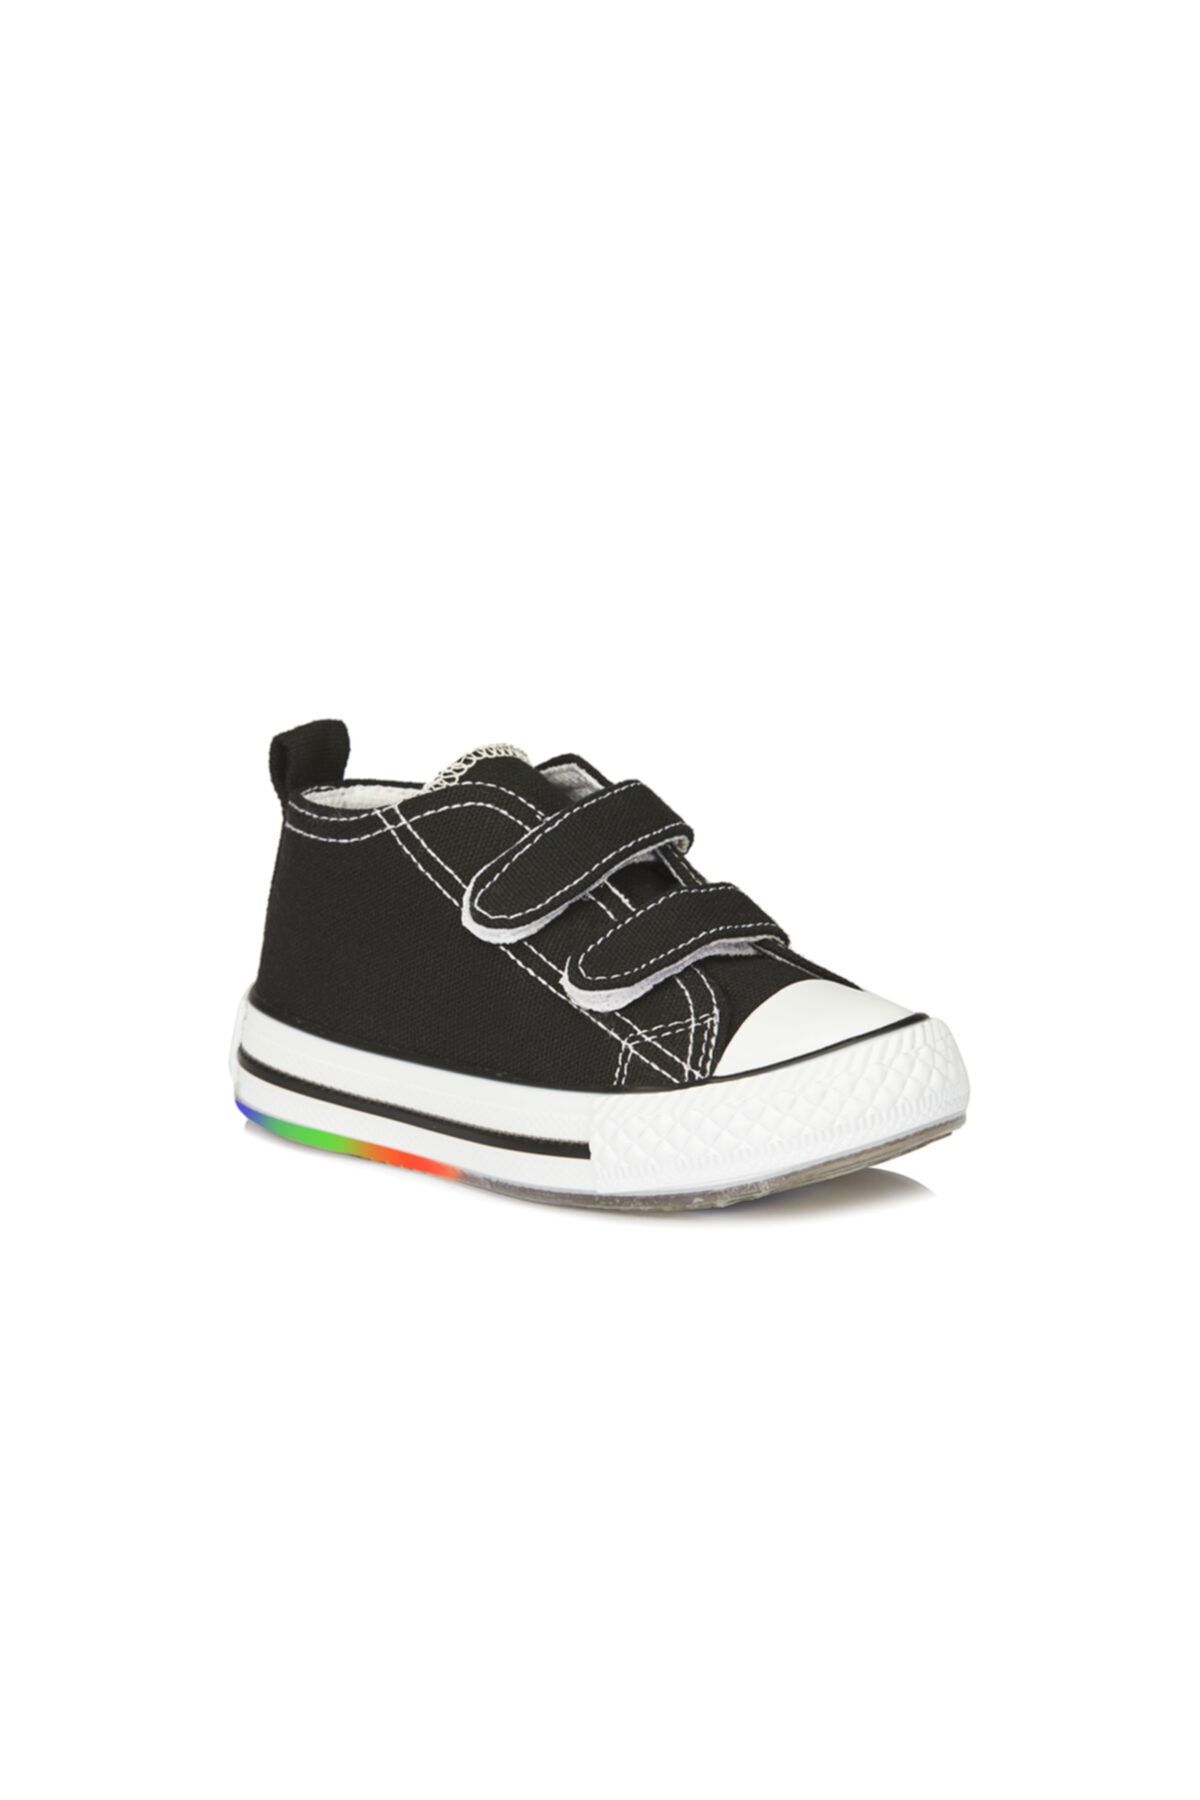 Vicco Pino Işıklı Unisex Bebe Siyah/beyaz Spor Ayakkabı